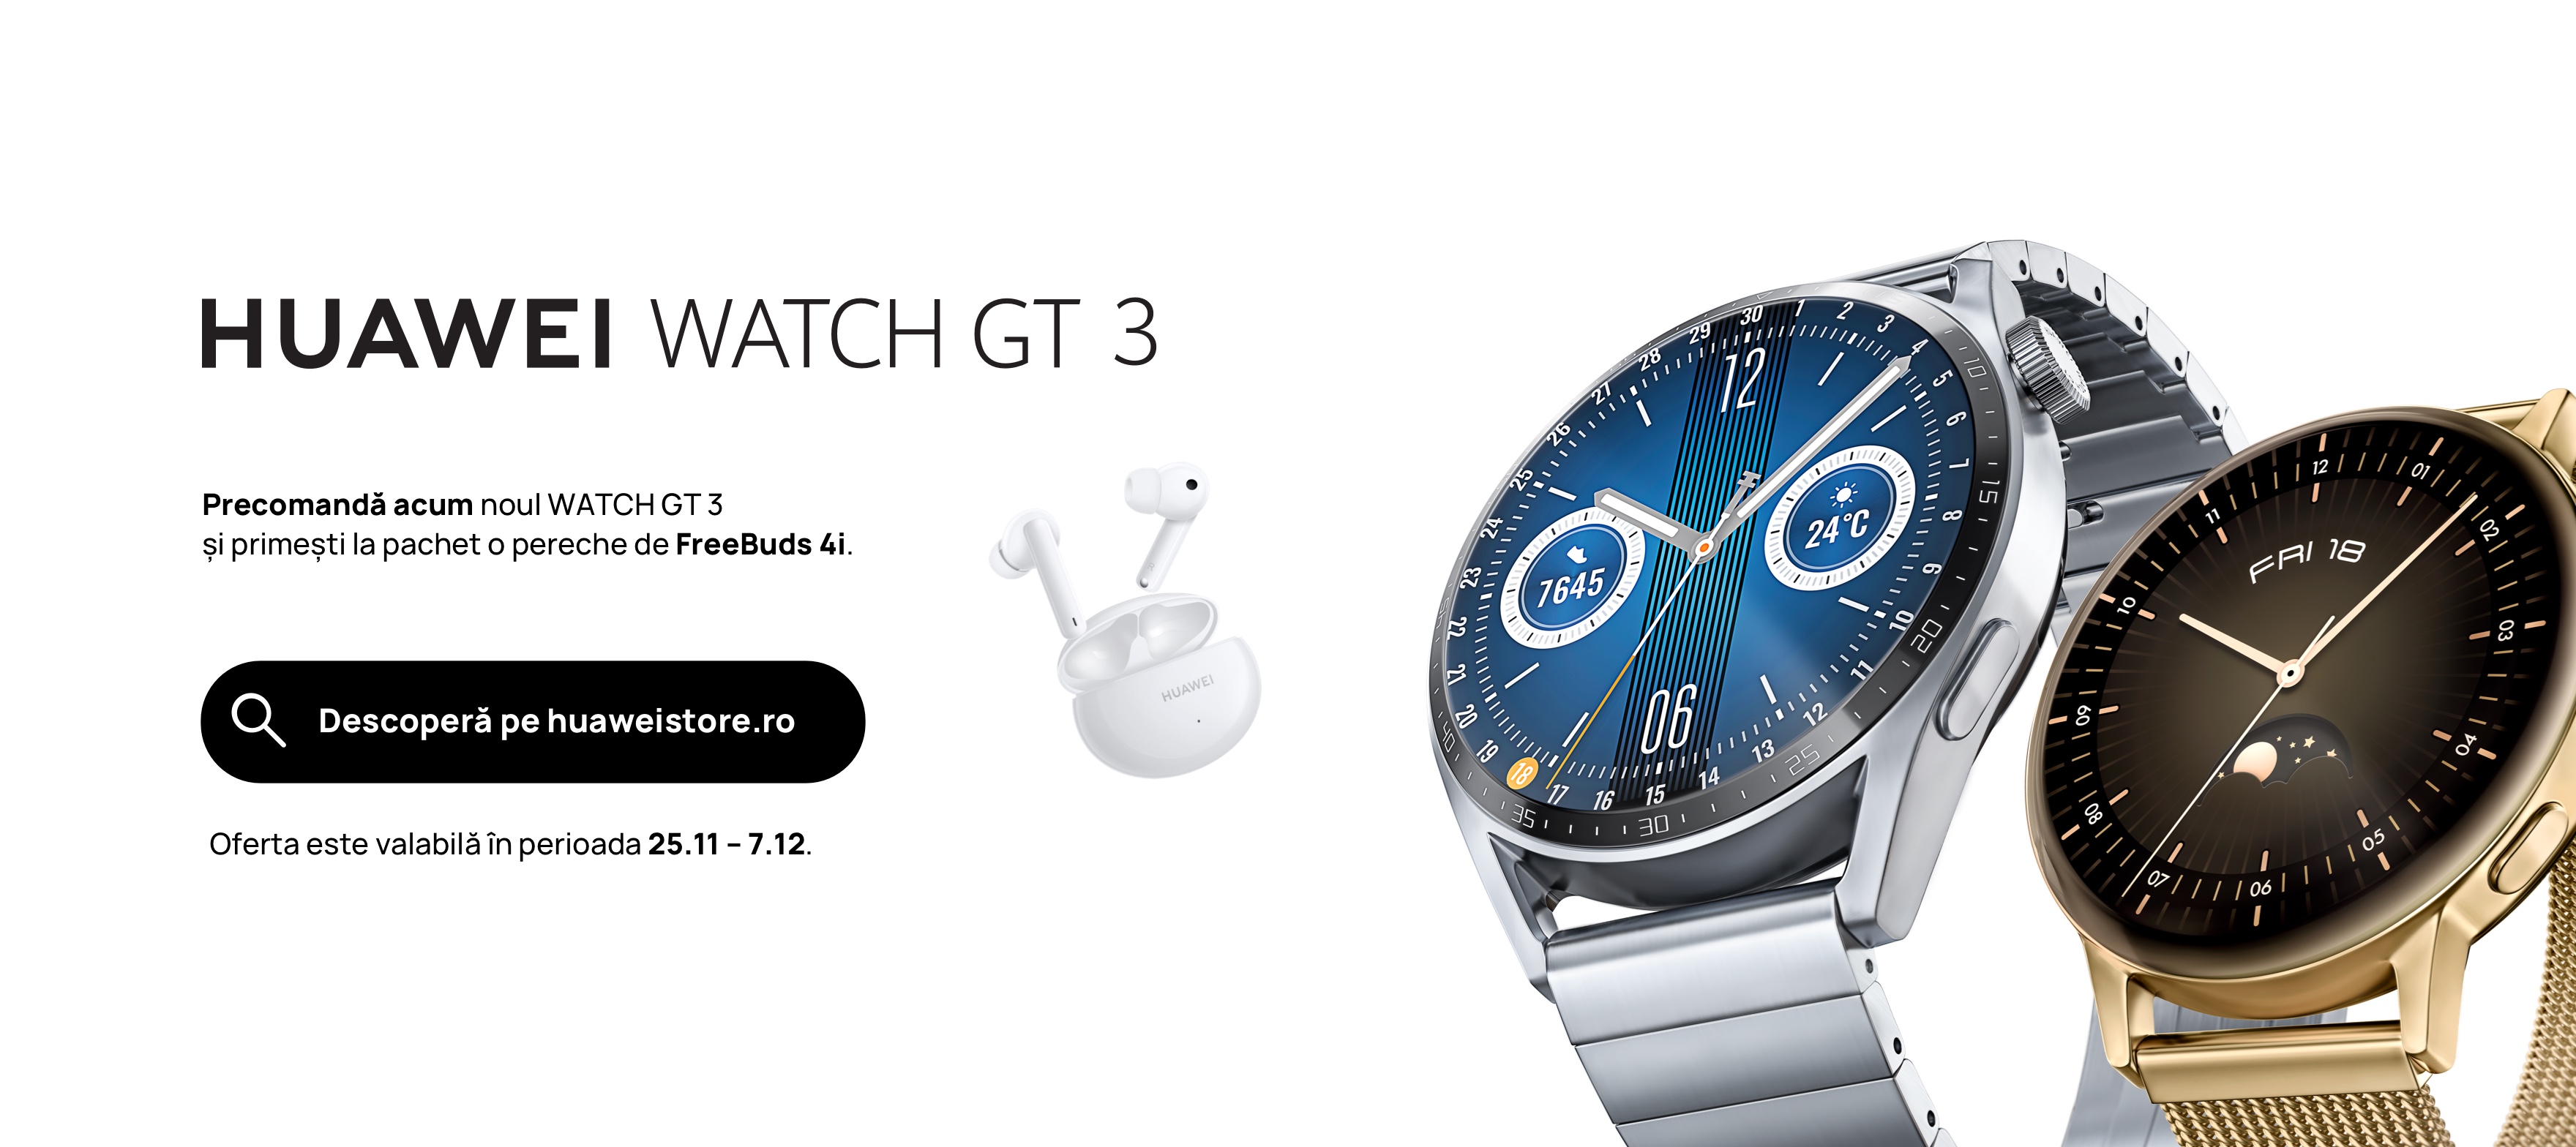 Huawei WATCH GT 3, ceasul inteligent care se potrivește stilului fiecărui utilizator